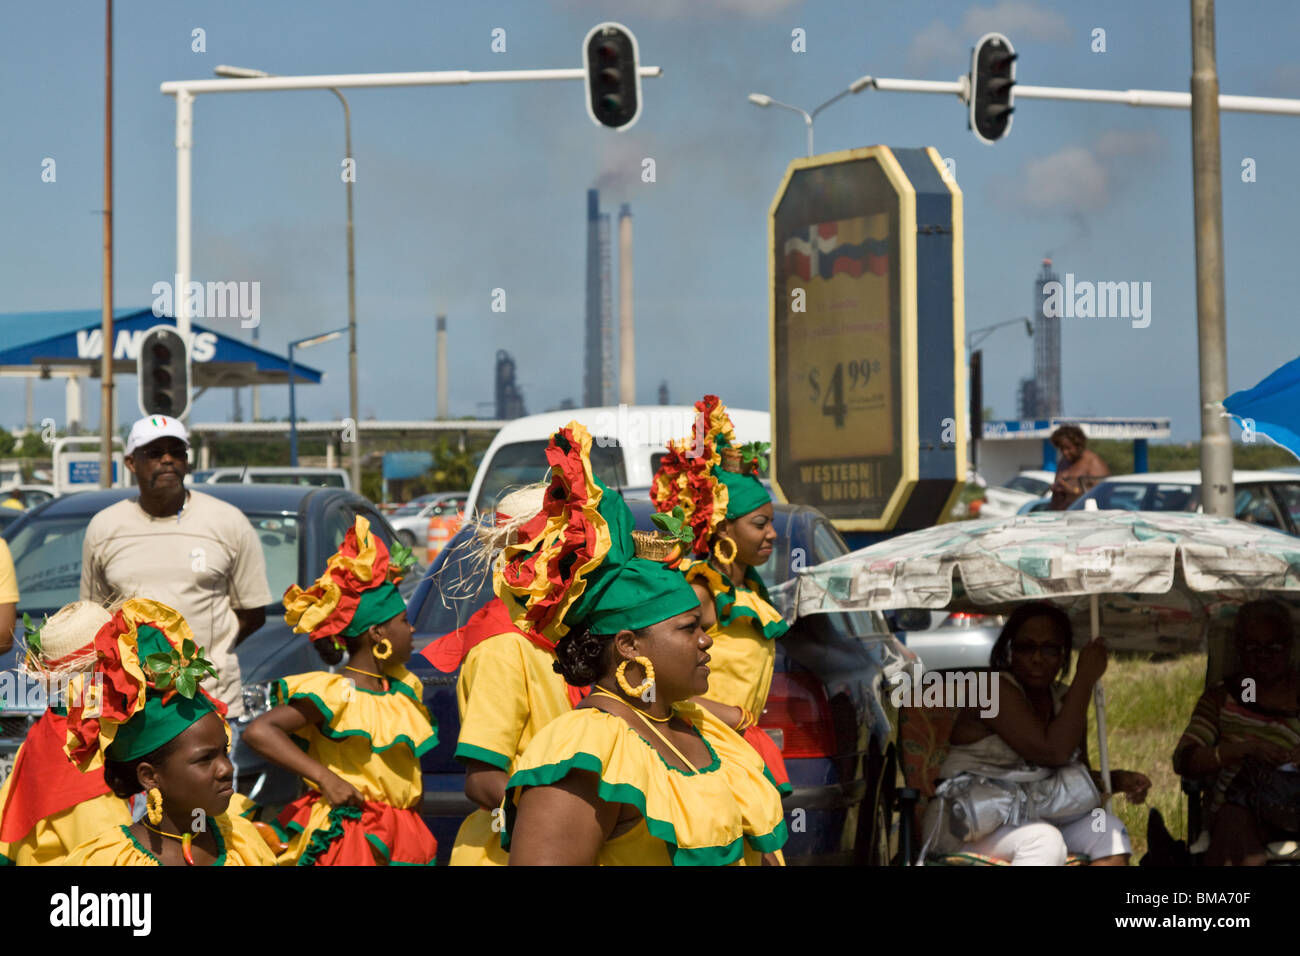 Les participants dansent dans Harvest Festival Parade avec la pollution de l'ISLA raffinerie de pétrole dans l'arrière-plan, Curacao, Antilles néerlandaises Banque D'Images